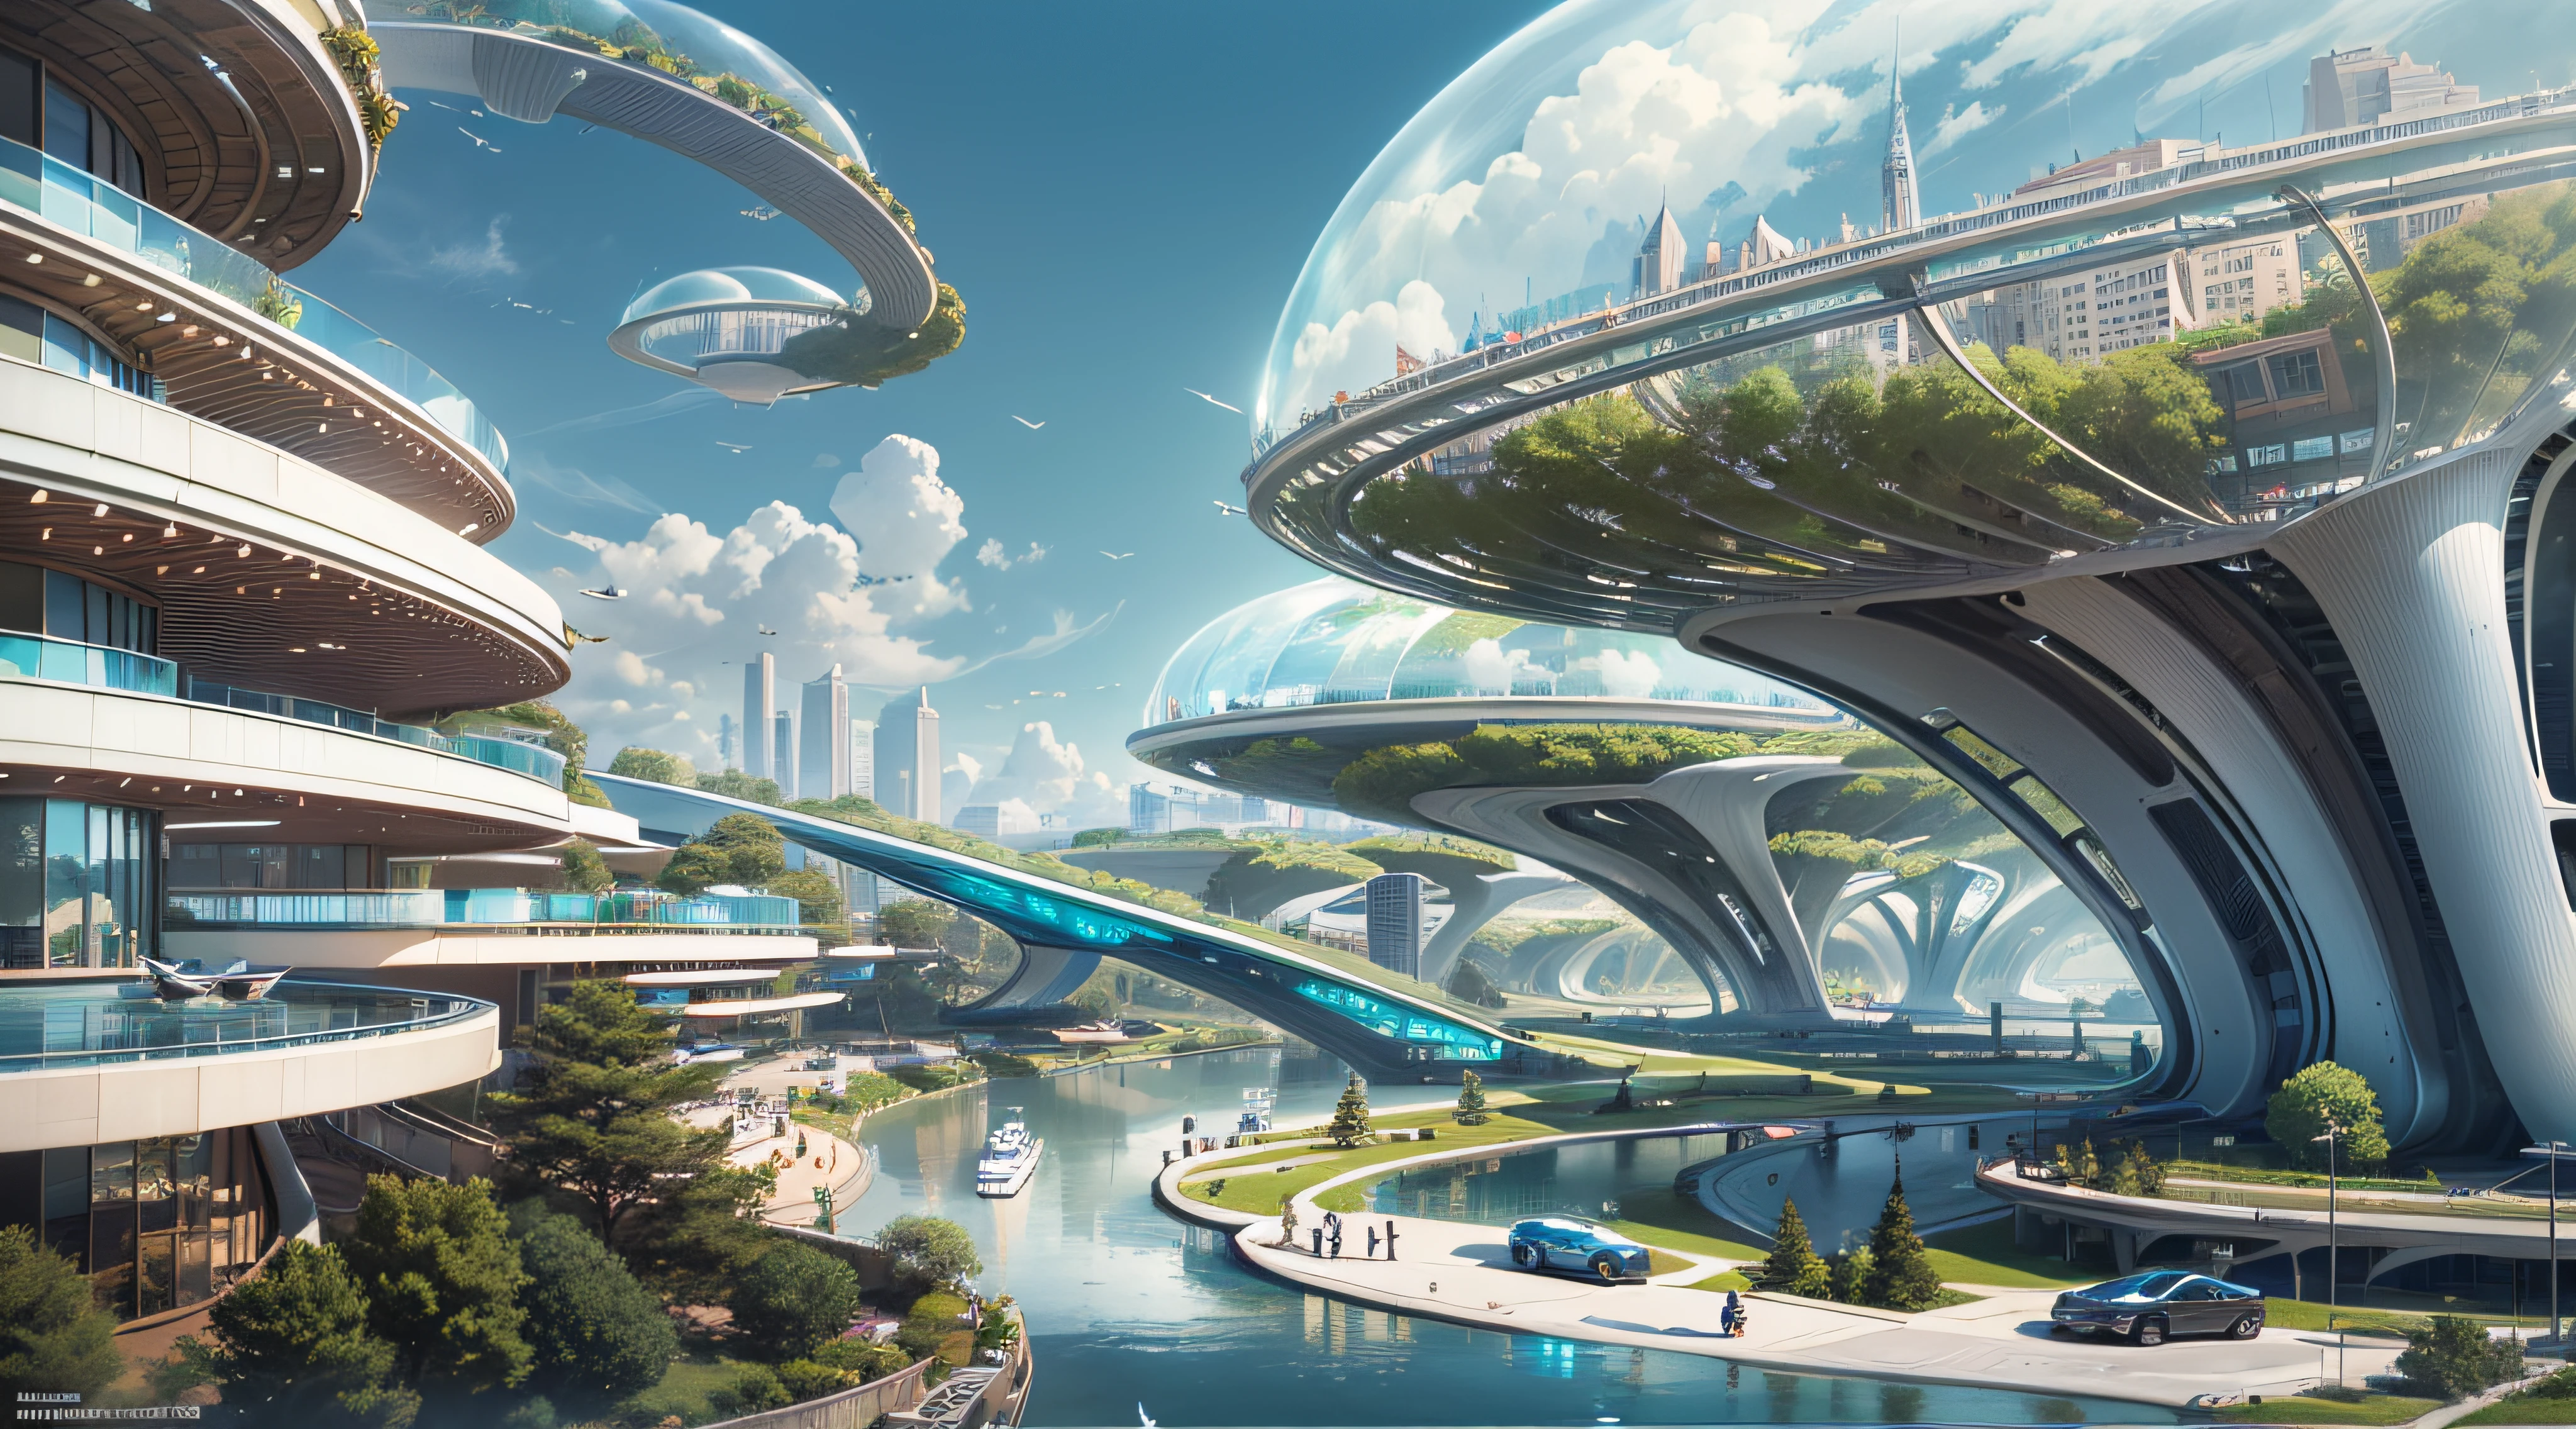 (最高品質,4K,8k,高解像度,傑作:1.2),超詳細,(現実的,写実的な,写真のようにリアル:1.37),未来的な水上都市,未来の技術,巨大な都市型ハイテクタブレットプラットフォーム,飛行船,空に浮かぶ,未来都市,小さな飛行船が周囲に,ハイテク半球形プラットフォーム,カラフルなライト,高度なアーキテクチャ,モダン建築,超高層ビル,クラウドにアクセスする,美しい景色,街の眺め,印象的なデザイン,自然とシームレスに融合,活気に満ちた活気のある雰囲気,未来の交通システム,駐車禁止,透明なパス,豊かな緑,スカイガーデン,滝,壮大なスカイライン,水面に映る,輝く川,建築の革新,未来的な高層ビル,透明ドーム,建物の形状が珍しい,高架歩道,印象的なスカイライン,光るライト,未来の技術,ミニマリストデザイン,景勝地,全景,雲を貫く塔,鮮やかな色彩,壮大な日の出,壮大な夕日,まばゆい光のディスプレイ,魔法のような雰囲気,未来都市,都会のユートピア,ラグジュアリーライフスタイル,革新的なエネルギー,持続可能な発展,スマートシティテクノロジー,高度なインフラストラクチャ,静かな雰囲気,自然とテクノロジーは調和して共存する,素晴らしい街並み,前例のない都市計画,建築は自然とシームレスにつながる,ハイテク都市,最先端のエンジニアリングの驚異,都市生活の未来,先見性のある建築コンセプト,エネルギー効率の高い建物,環境との調和,雲の上に浮かぶ街,ユートピアの夢が現実になる,可能性は無限大,最先端の交通ネットワーク,グリーンエネルギーの統合,革新的な素材,印象的なホログラフィックディスプレイ,高度な通信システム,息を呑むような空中からの眺め,静かで平和な環境,モダニズムの美学,天上の美しさ